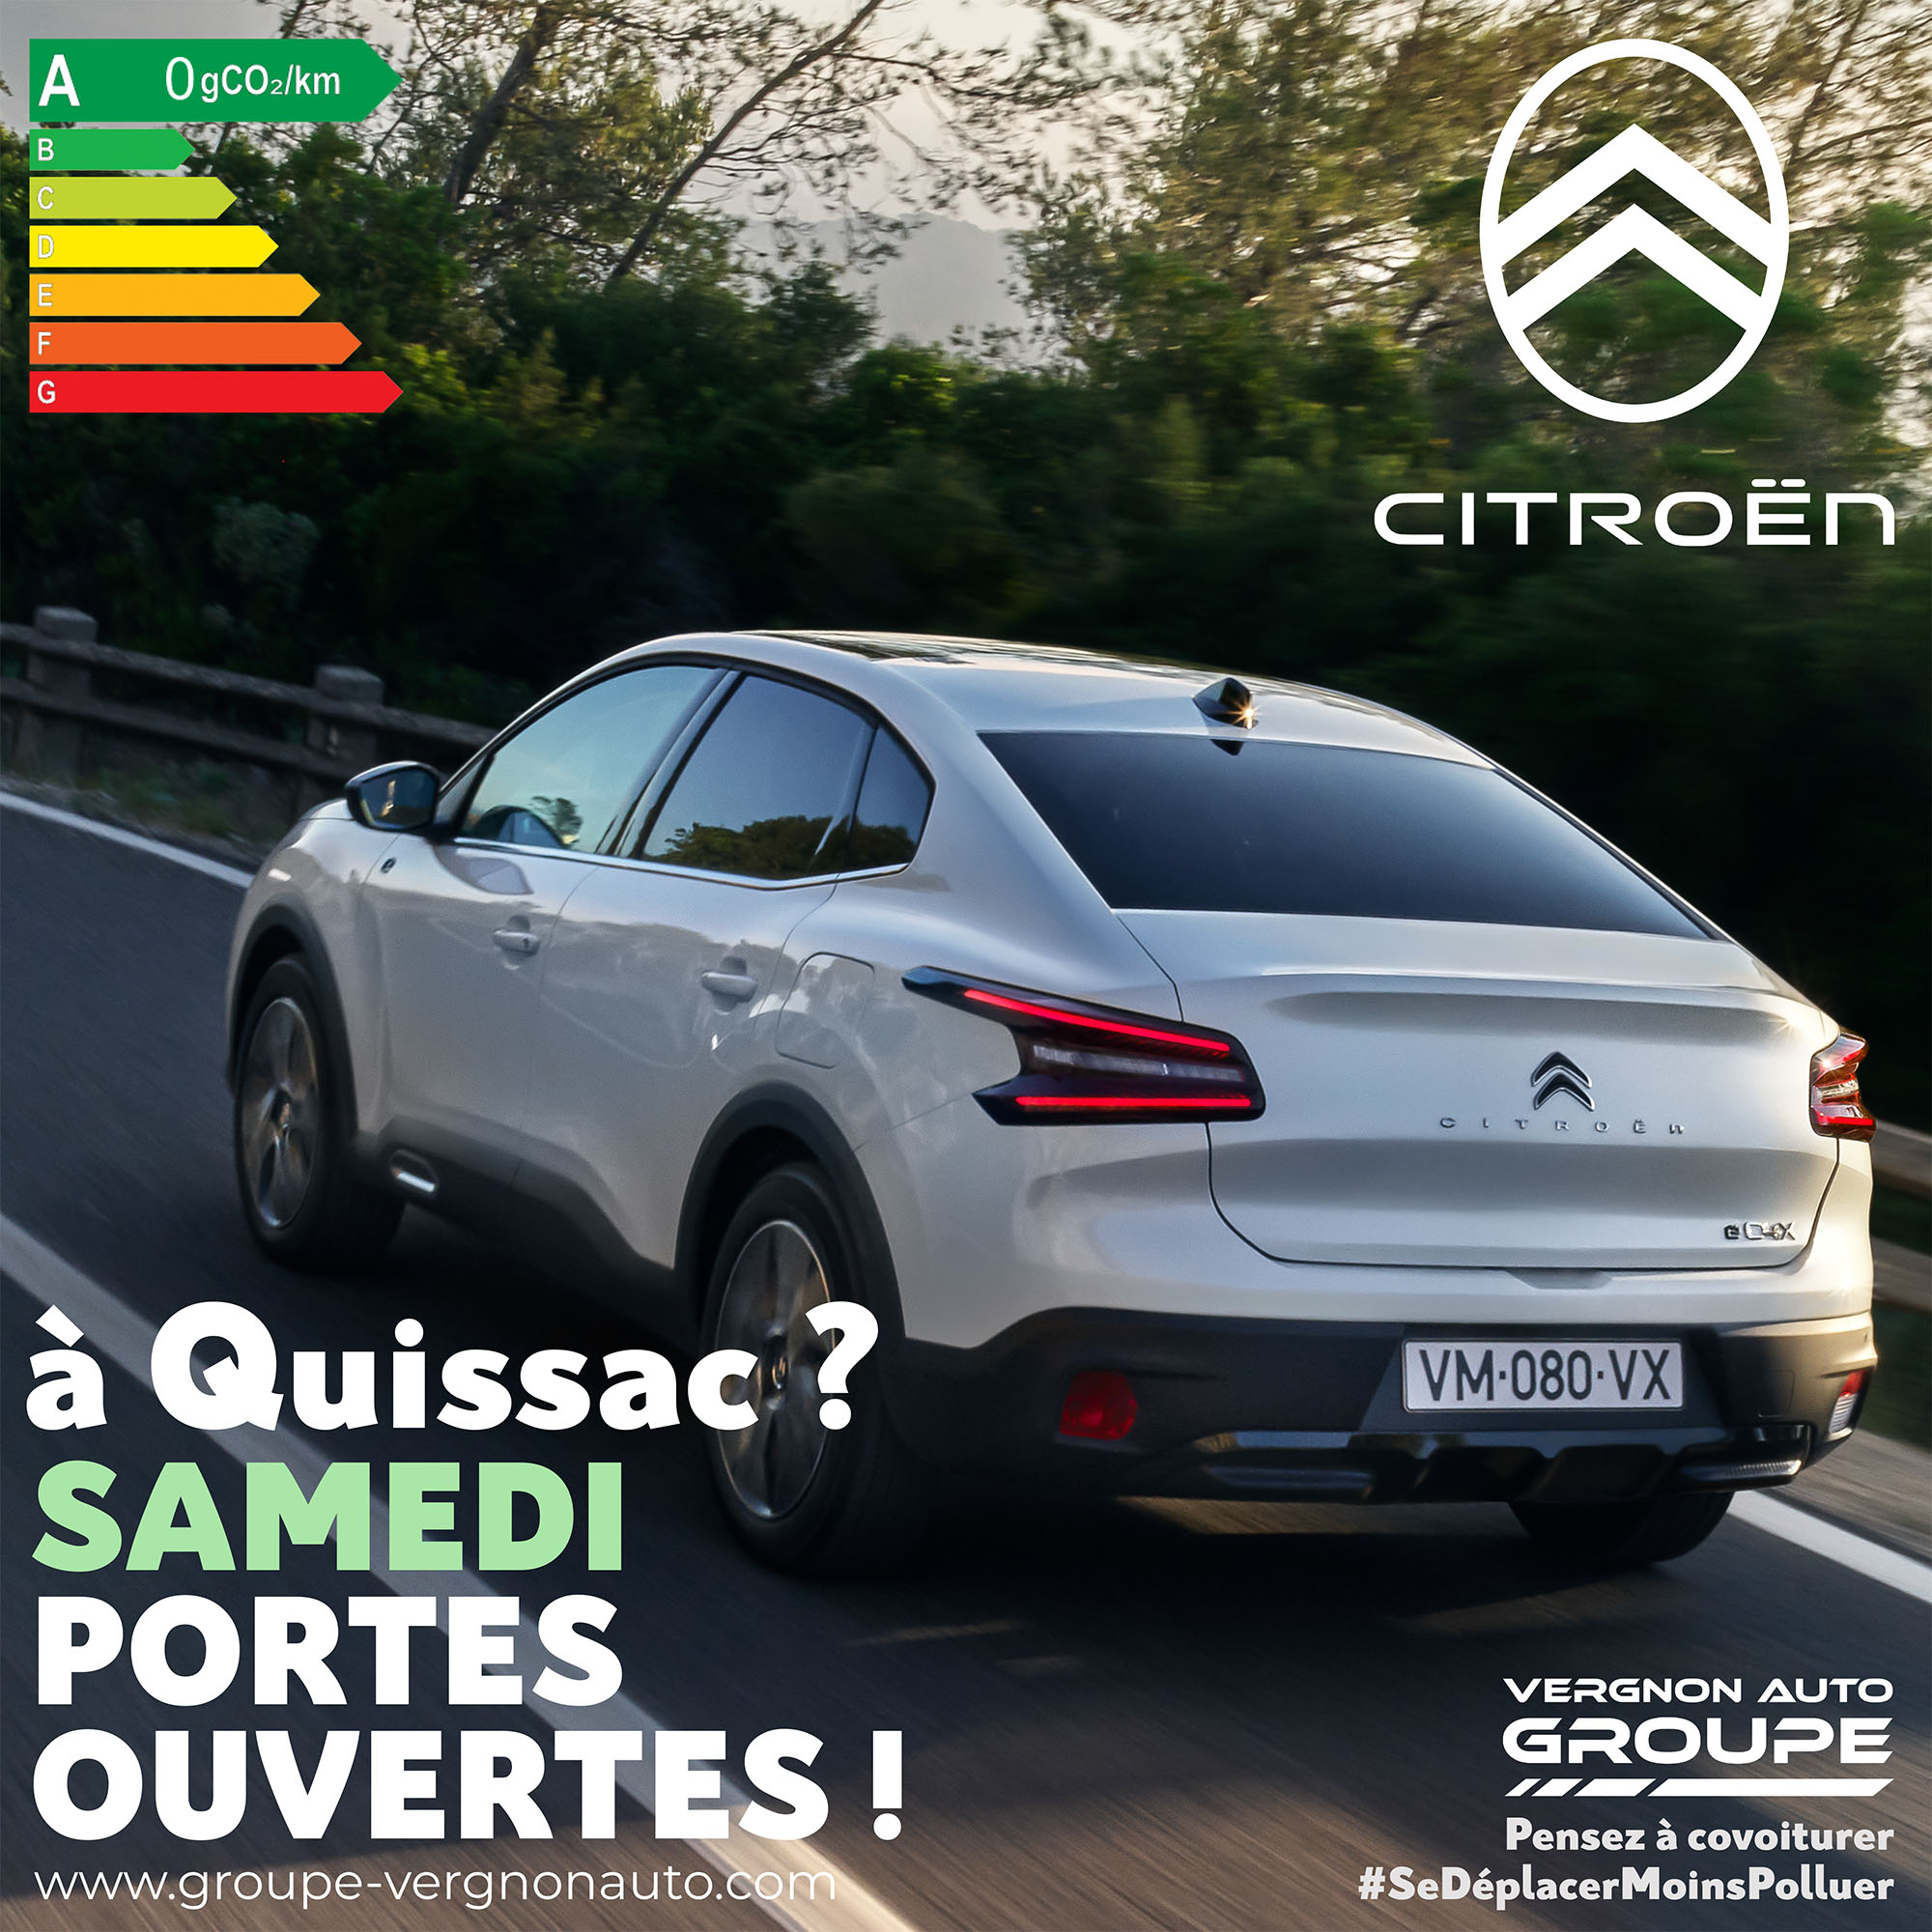 Samedi 15 octobre 2022, venez profiter à Quissac (Gard - 30) de nos portes ouvertes Citroën !